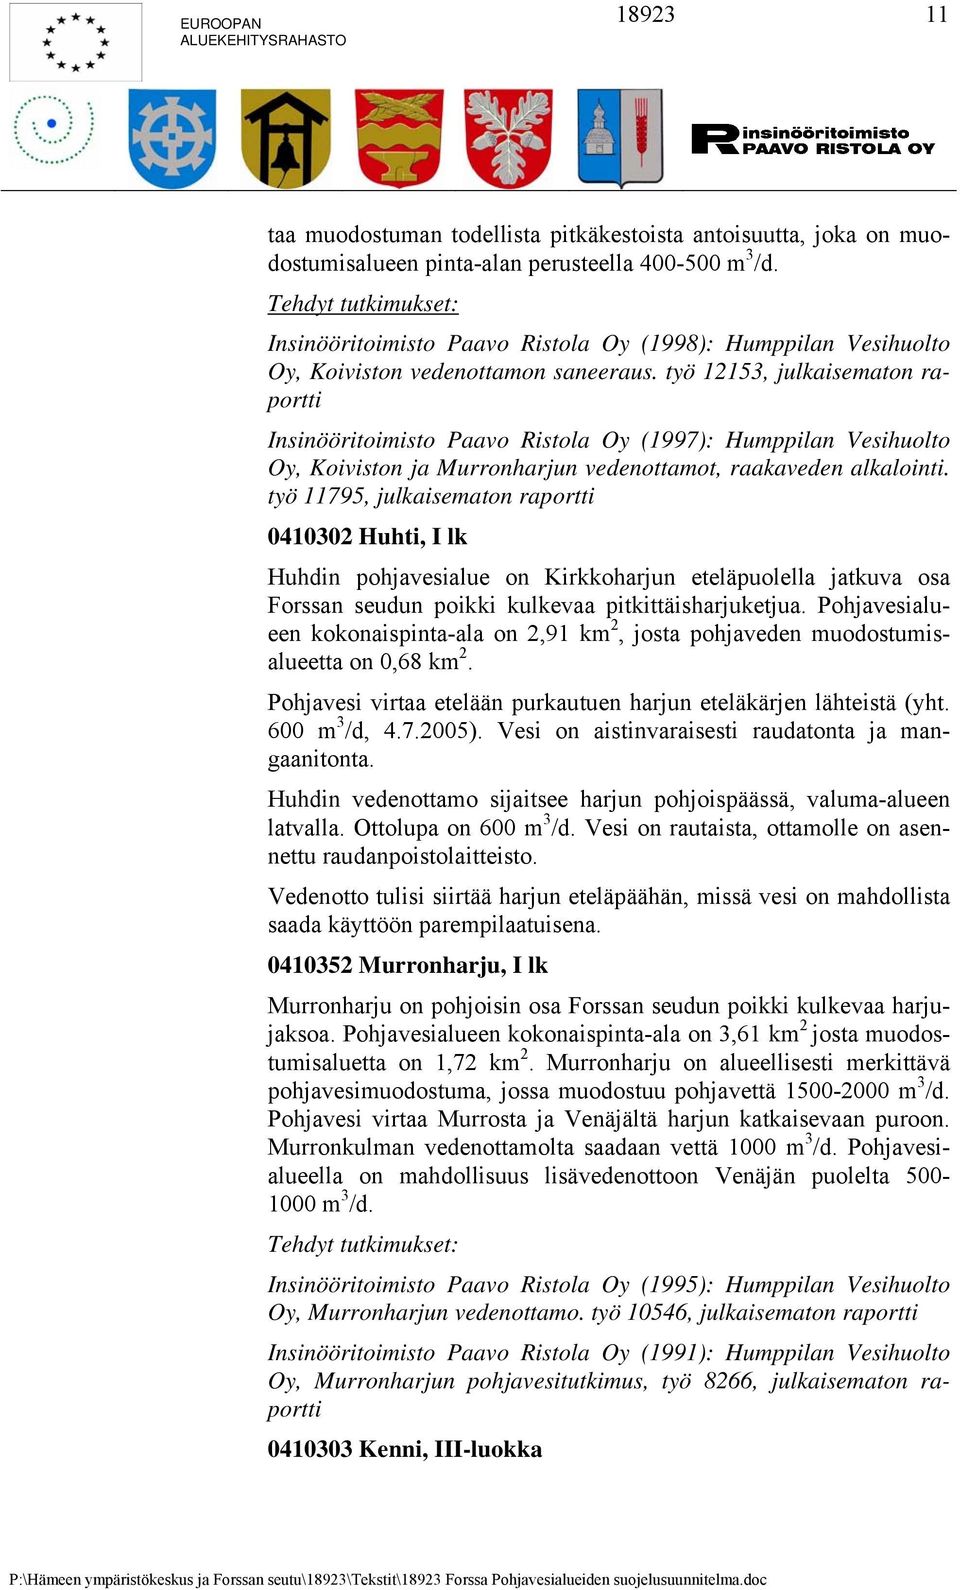 työ 12153, julkaisematon raportti Insinööritoimisto Paavo Ristola Oy (1997): Humppilan Vesihuolto Oy, Koiviston ja Murronharjun vedenottamot, raakaveden alkalointi.